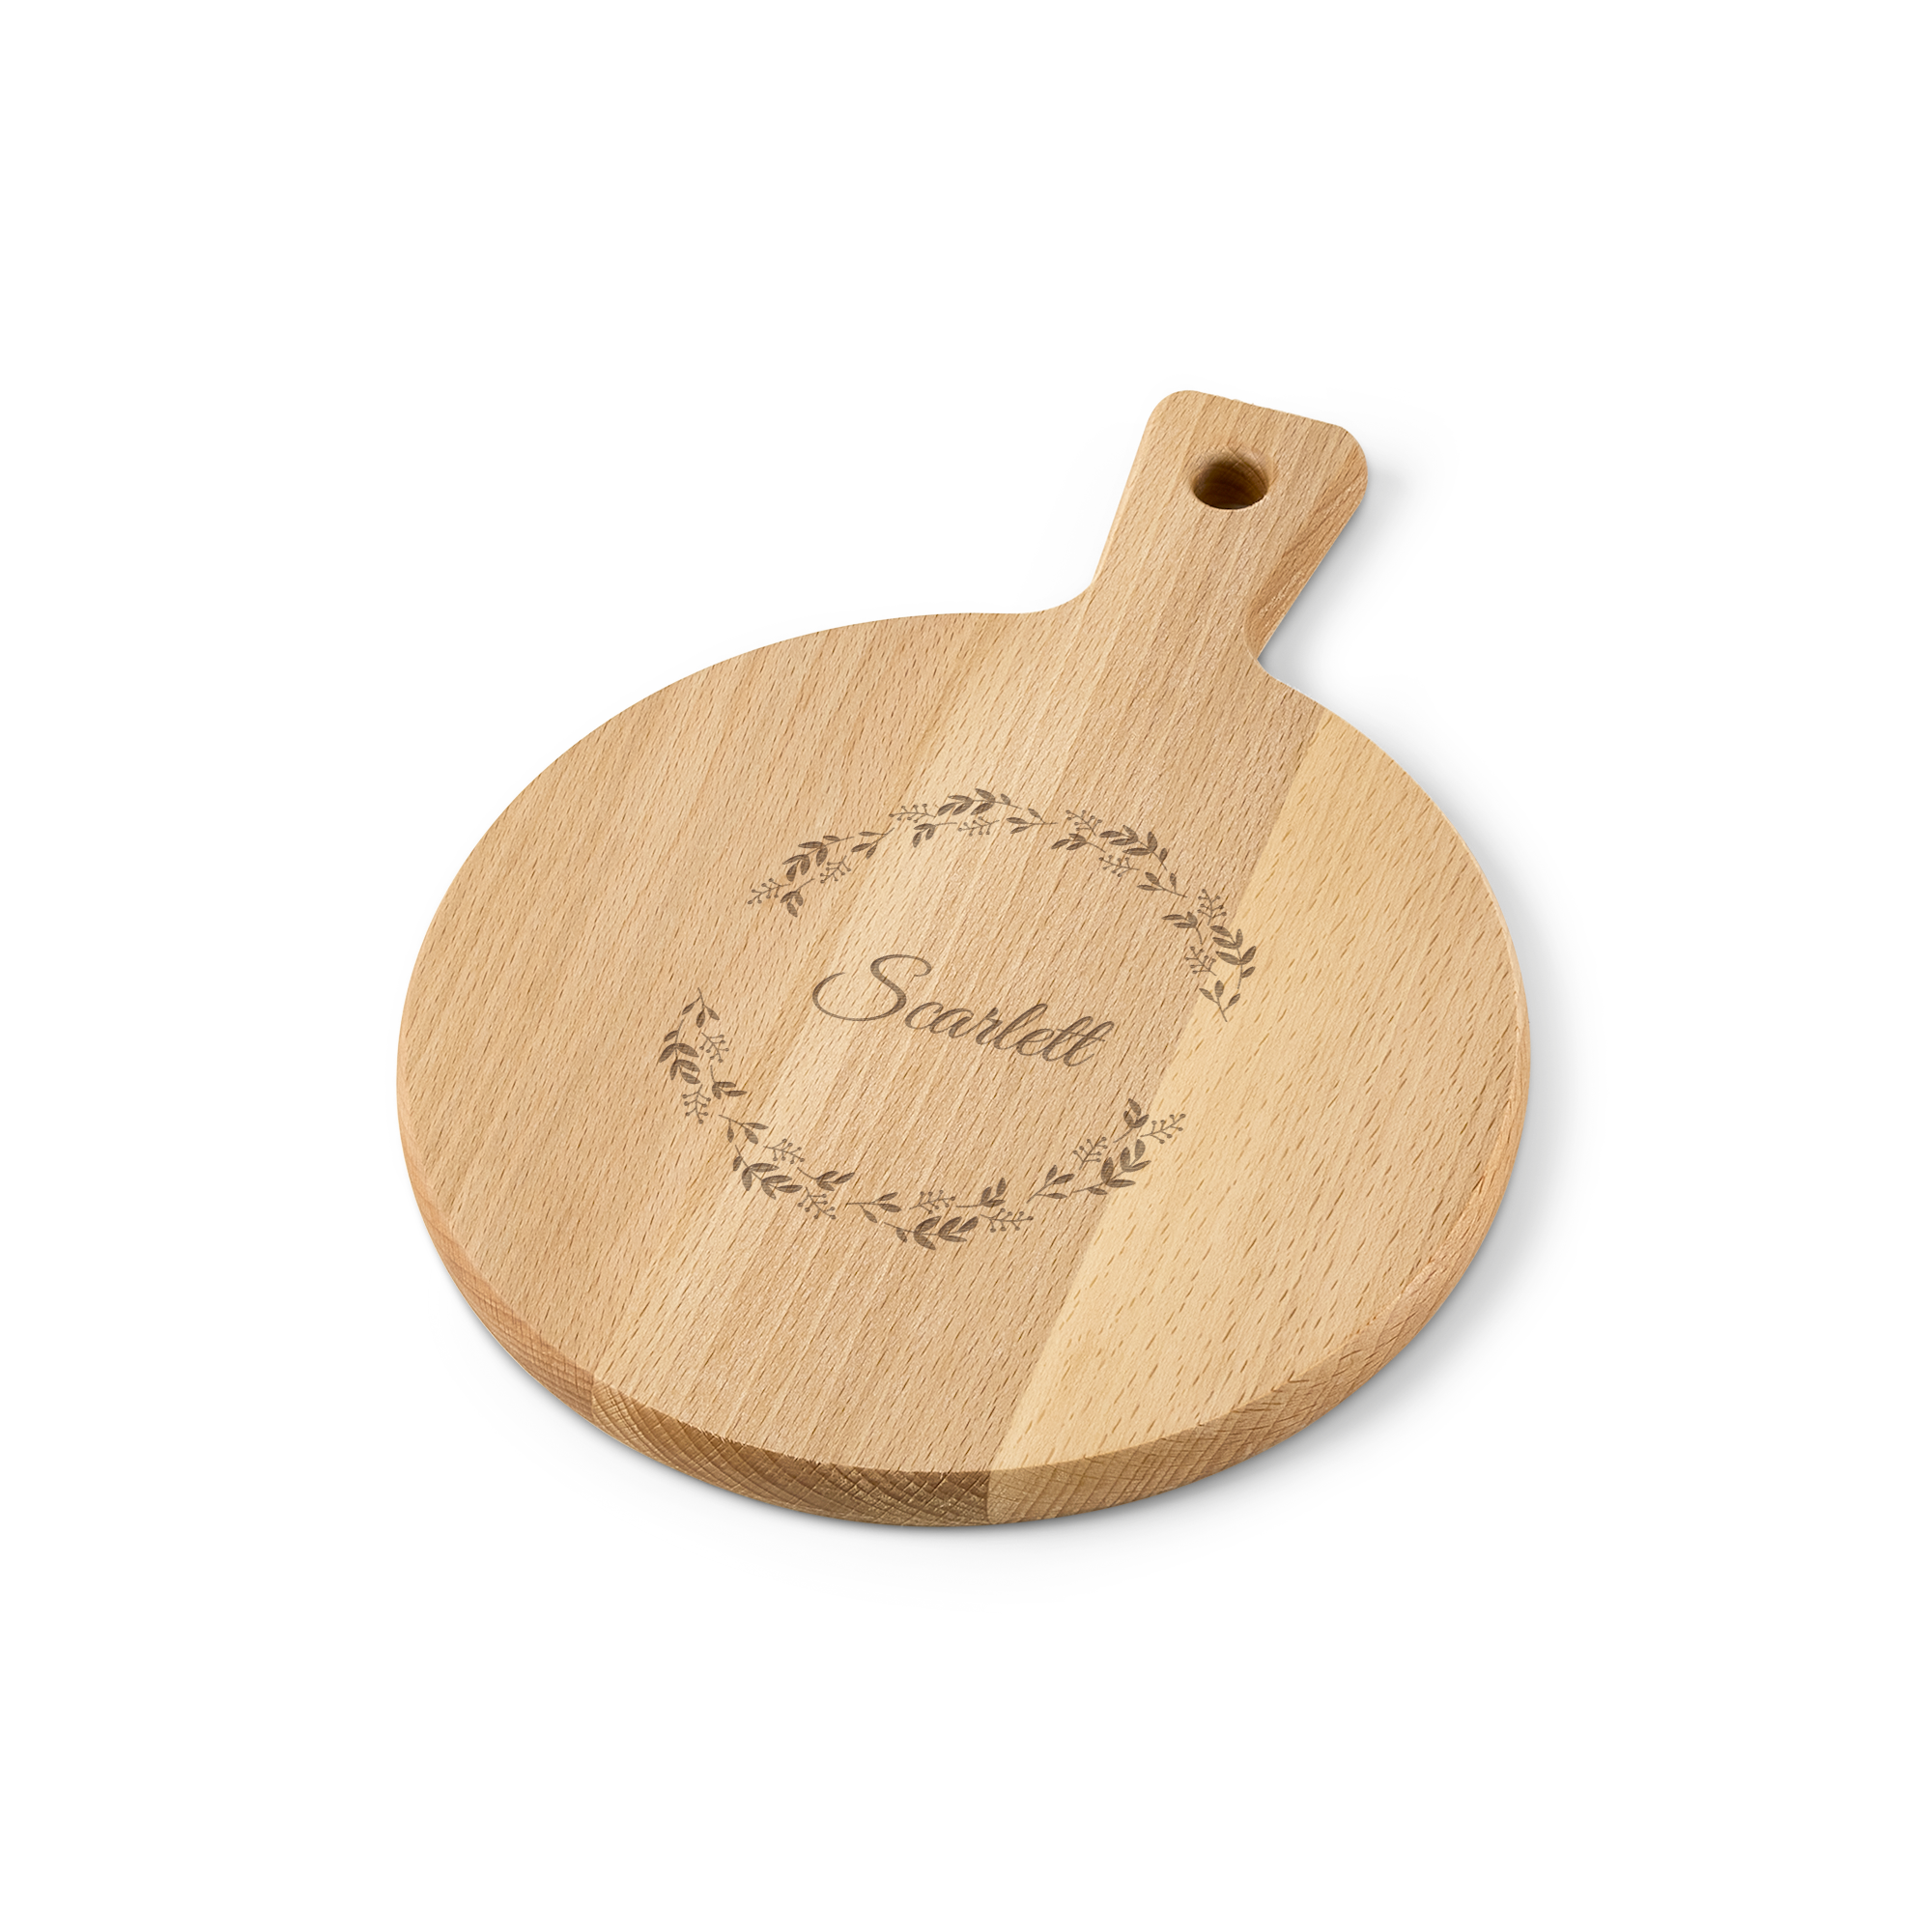 Wooden serving platter - Beech wood - Round (S)